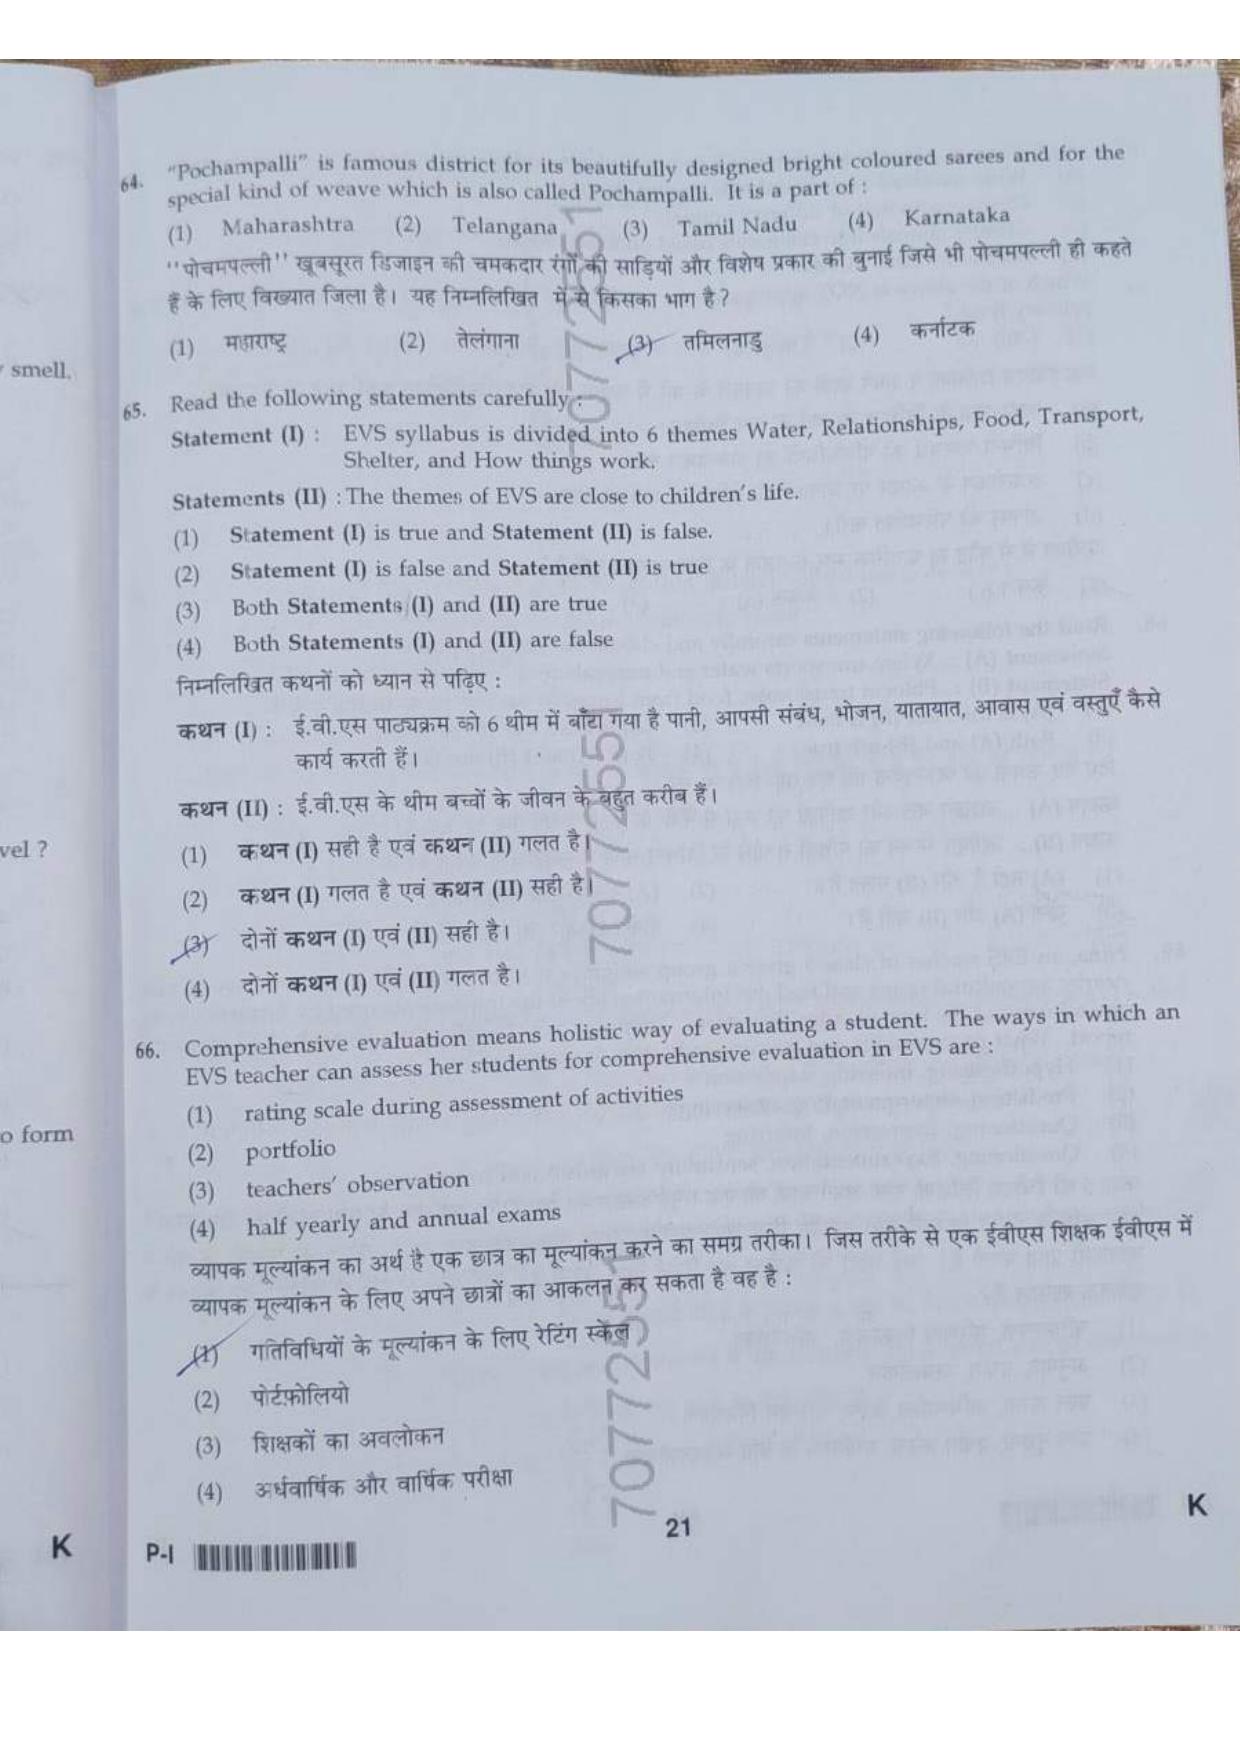 ctet paper 1 question paper SET K - Page 21